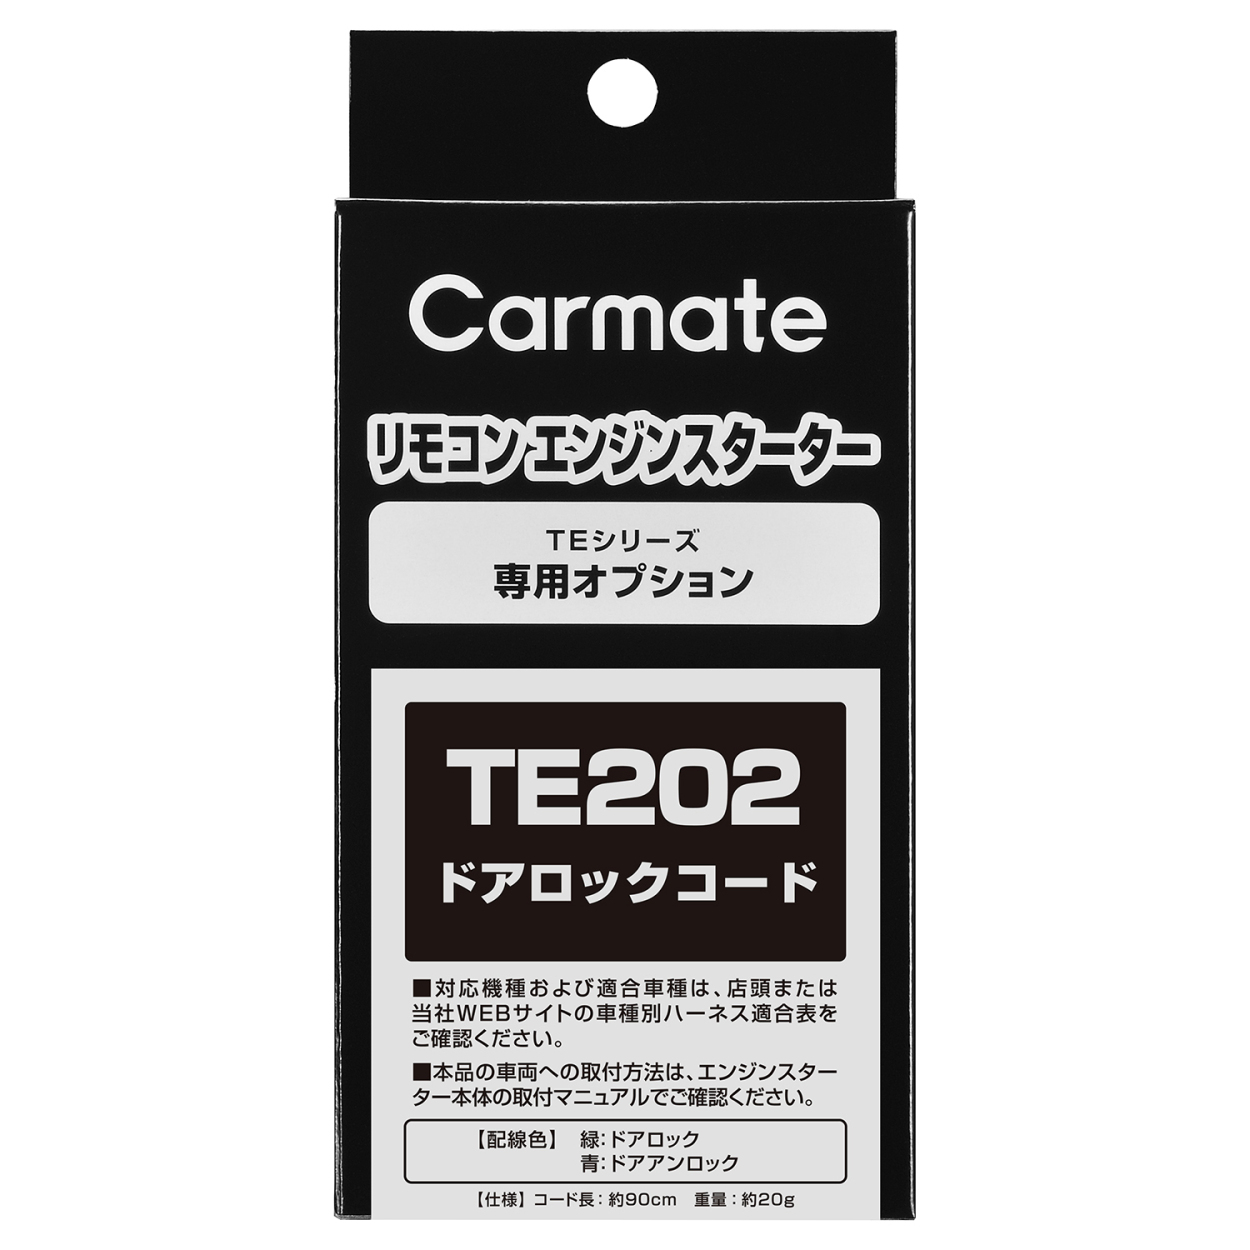 カーメイト TE202 ドアロックコード リモコンエンジンスターターオプション 補修部品 carmate :te202:カーメイト  公式オンラインストア - 通販 - Yahoo!ショッピング